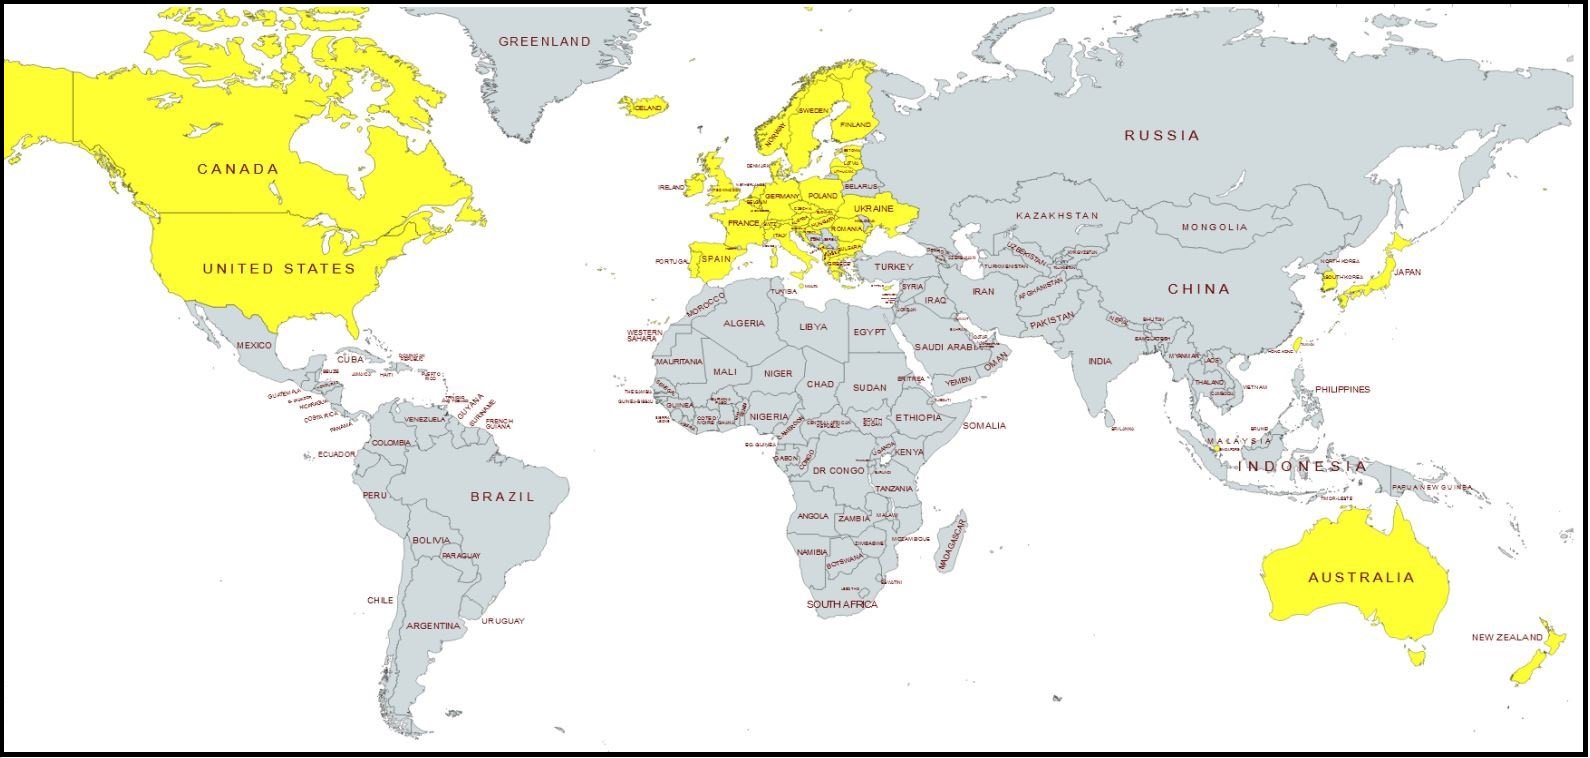 Ollie-Vargas-Image-of-countries-Sanctions-Ukraine-WEF-Energy.jpg